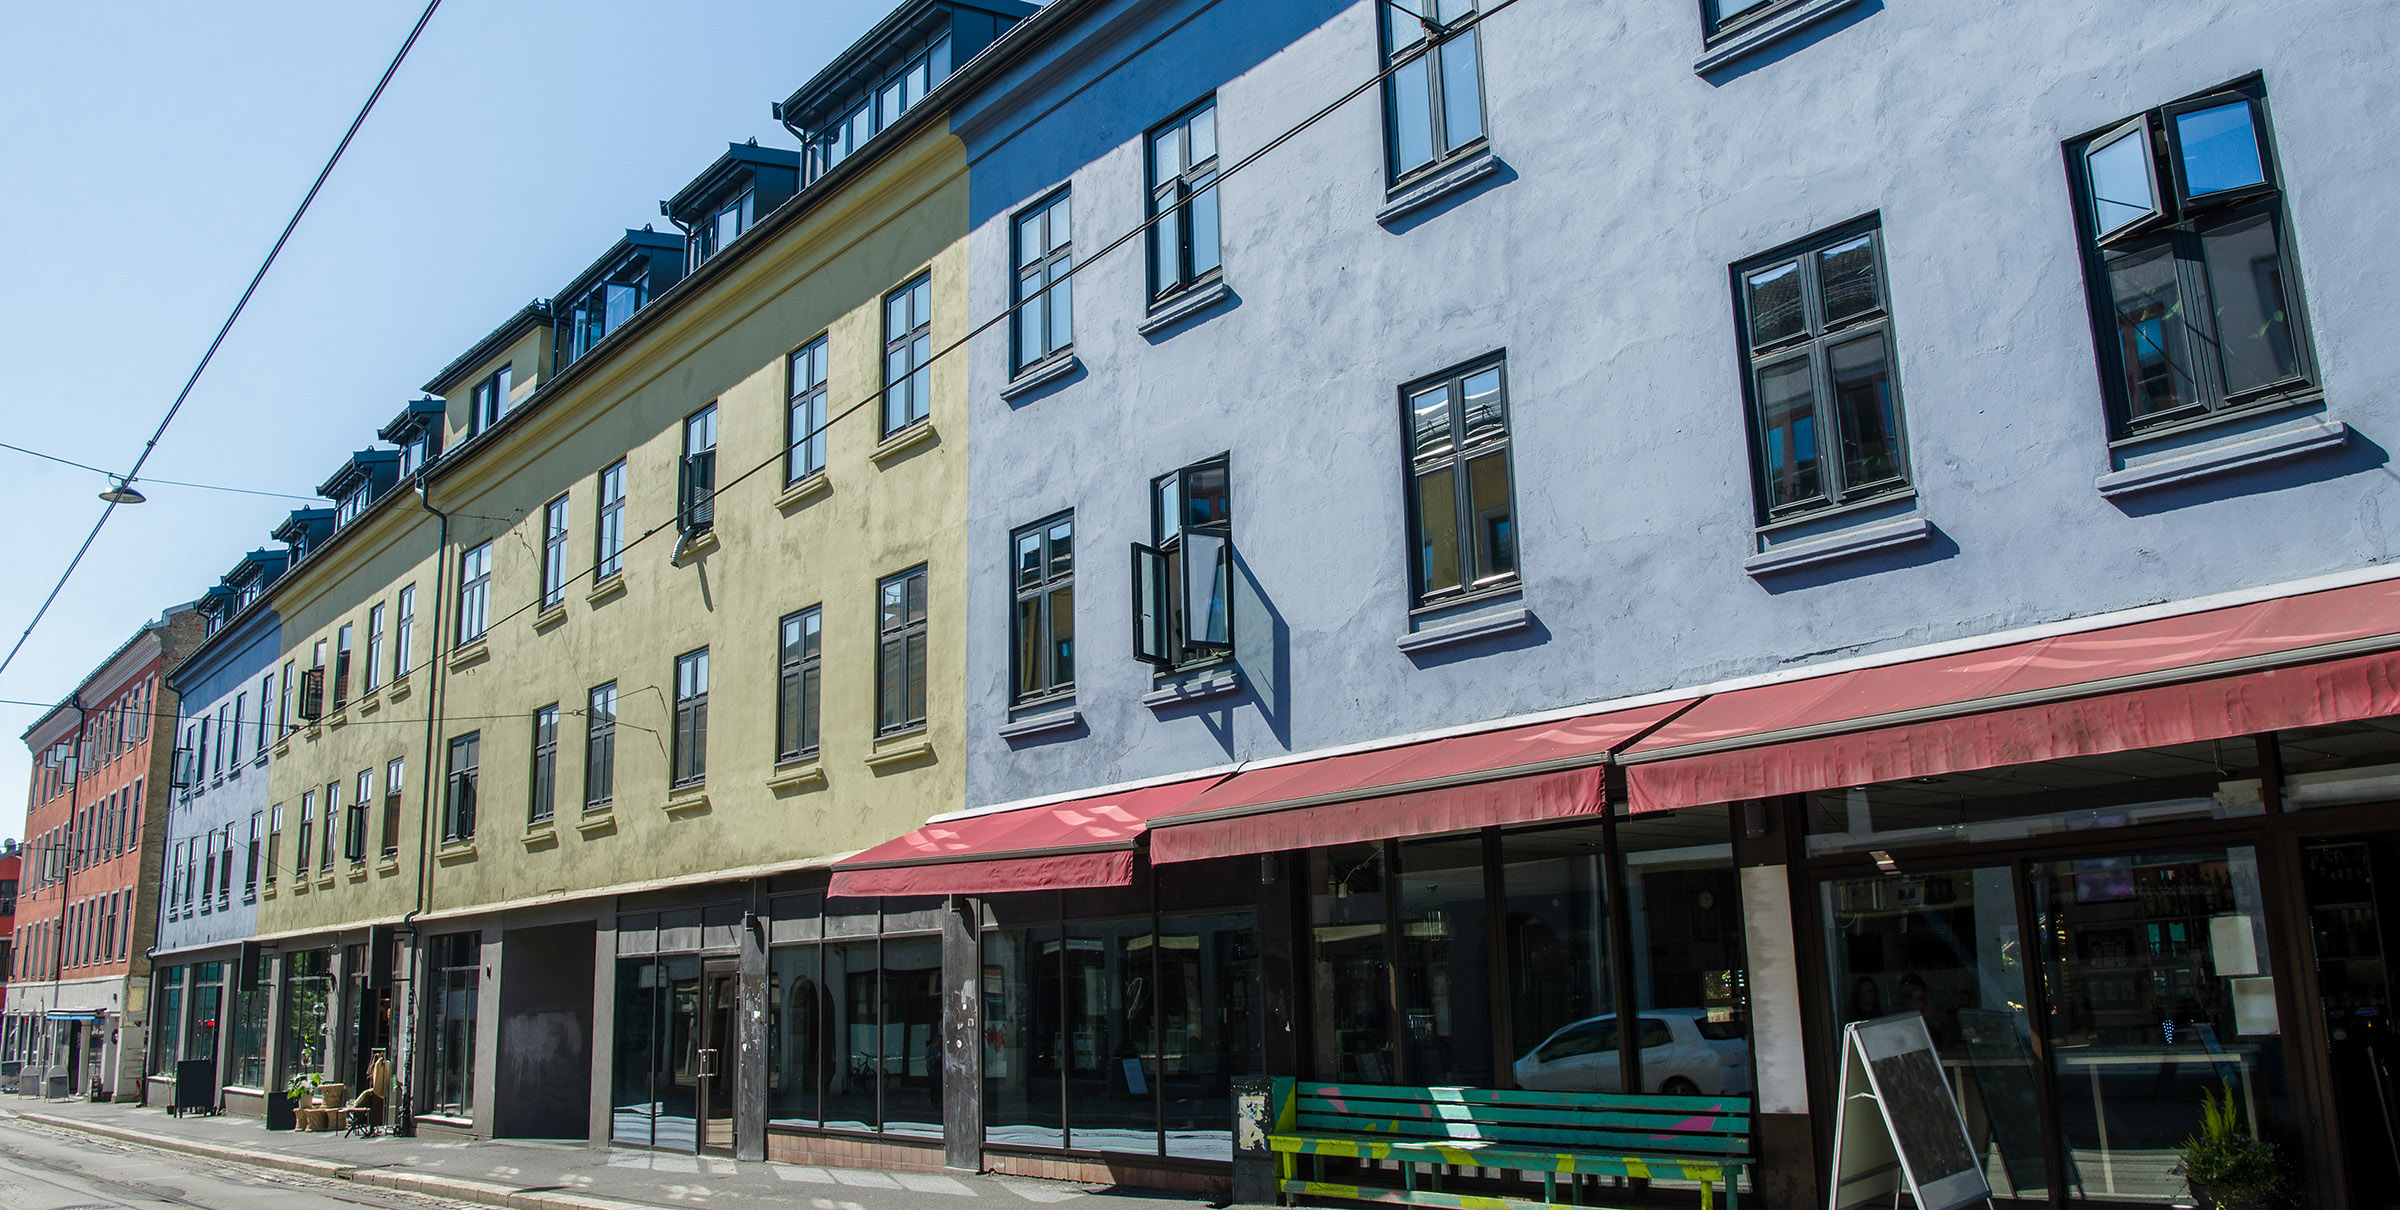 Rekke med bygårder i Oslo